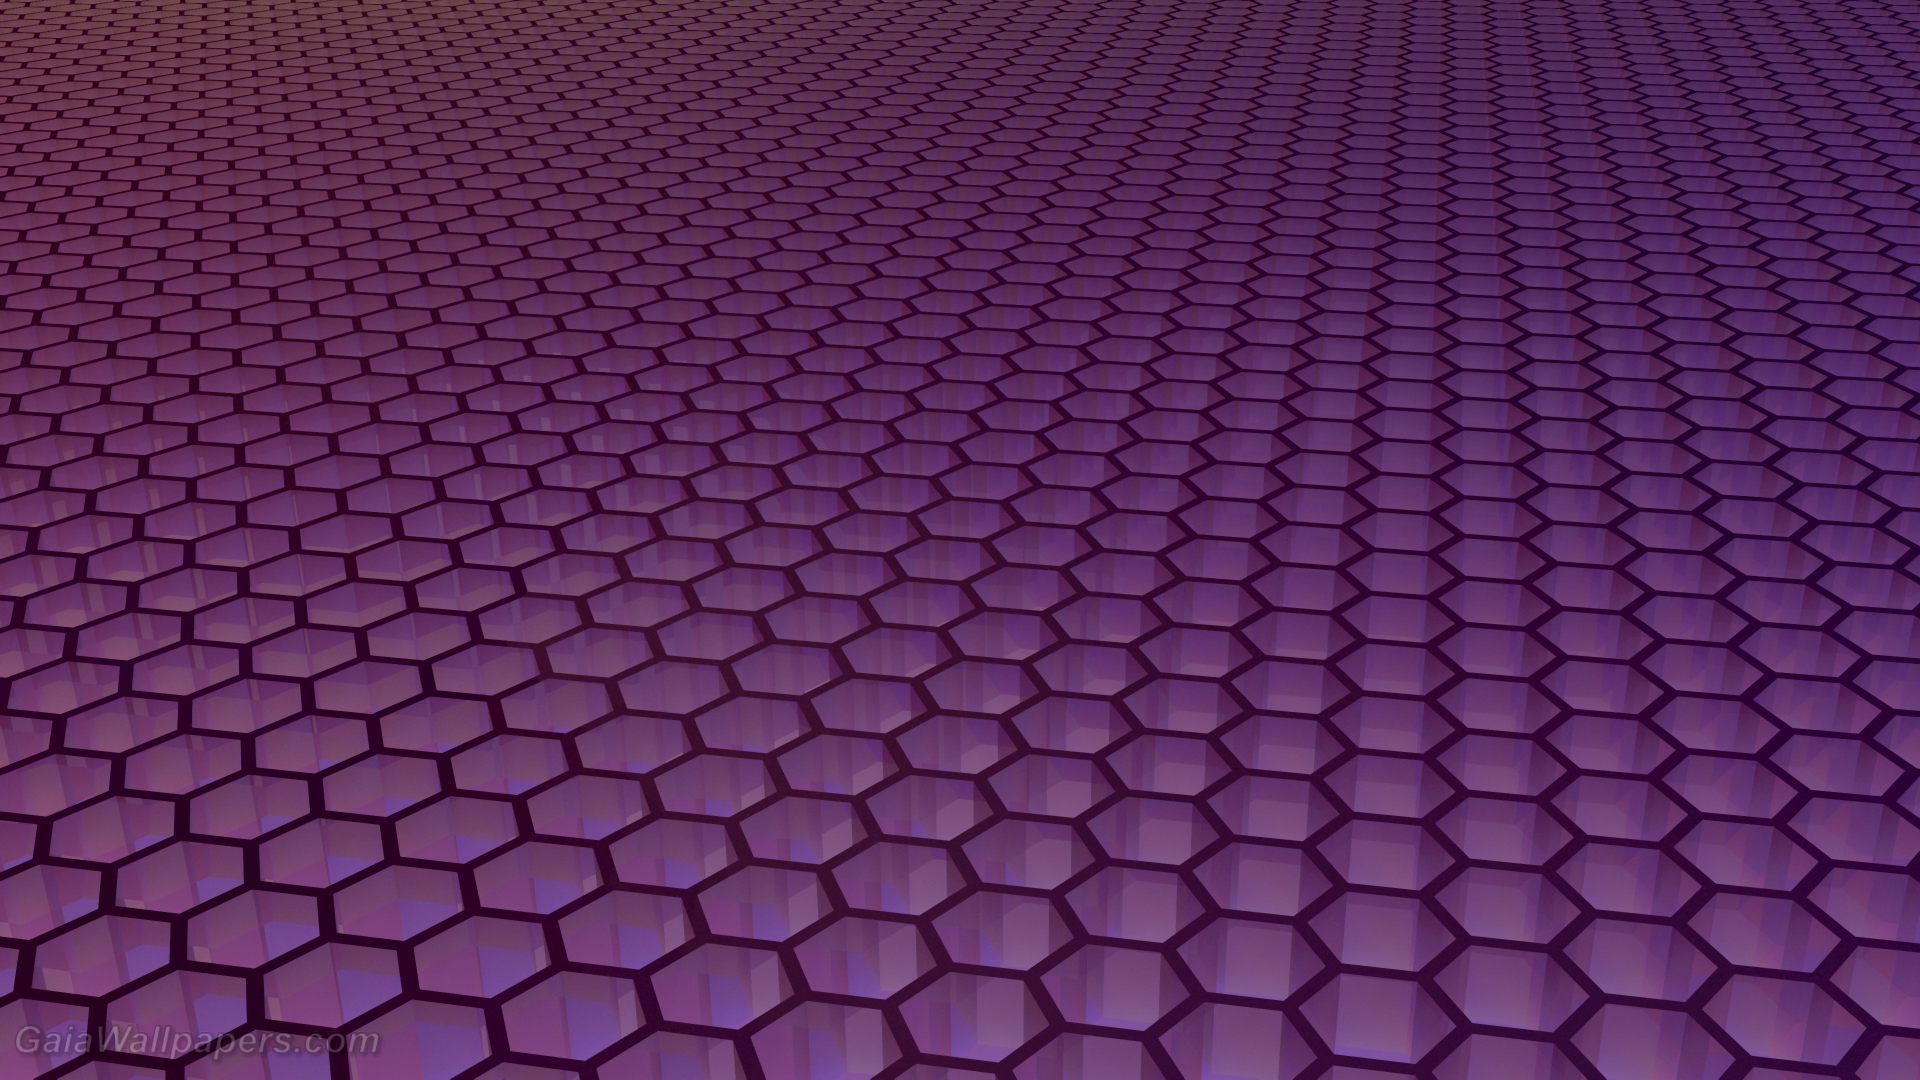 Infinite Purple Hexagonal Grid - Opočno Castle , HD Wallpaper & Backgrounds